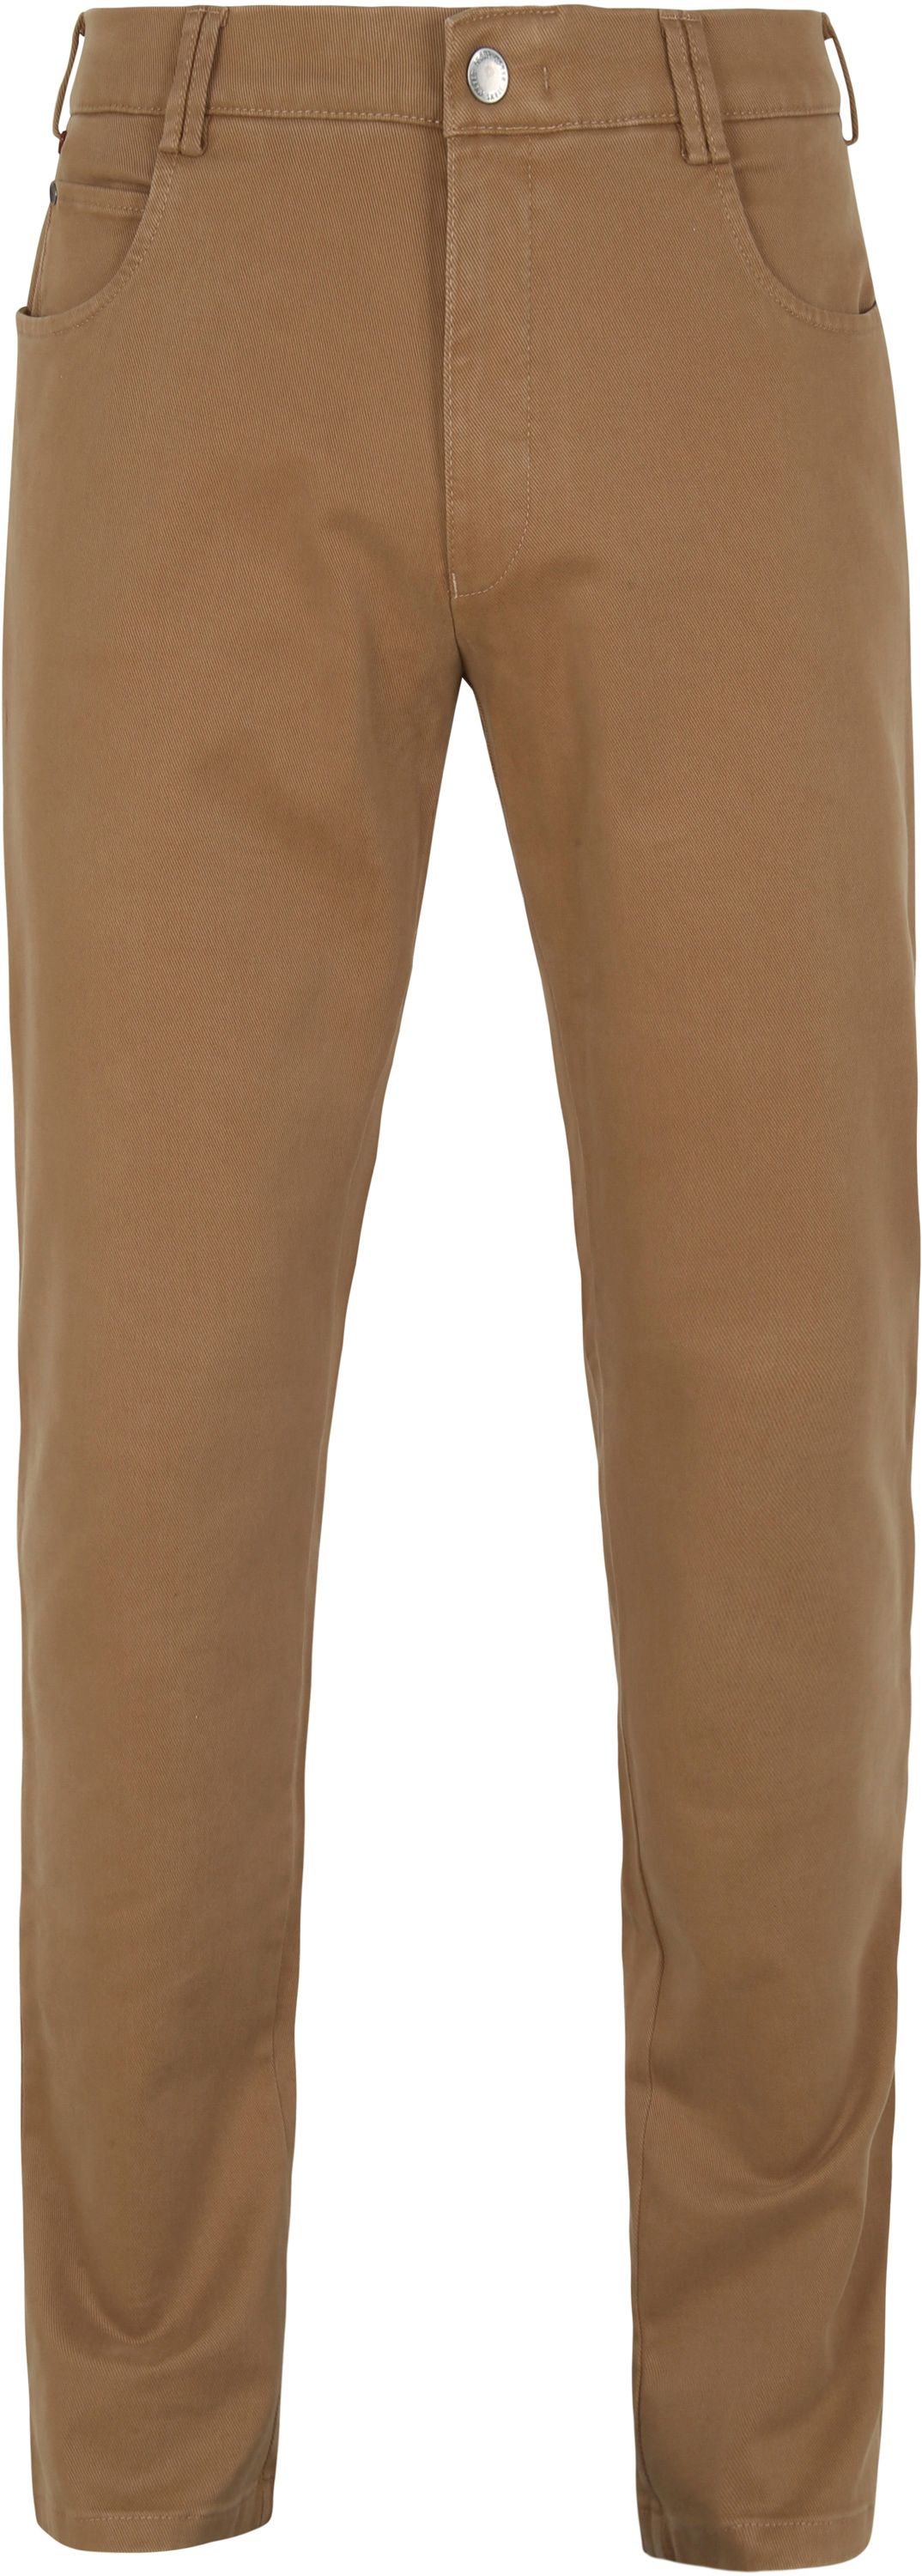 Meyer Dubai Pants Camel Brown size W 32/33